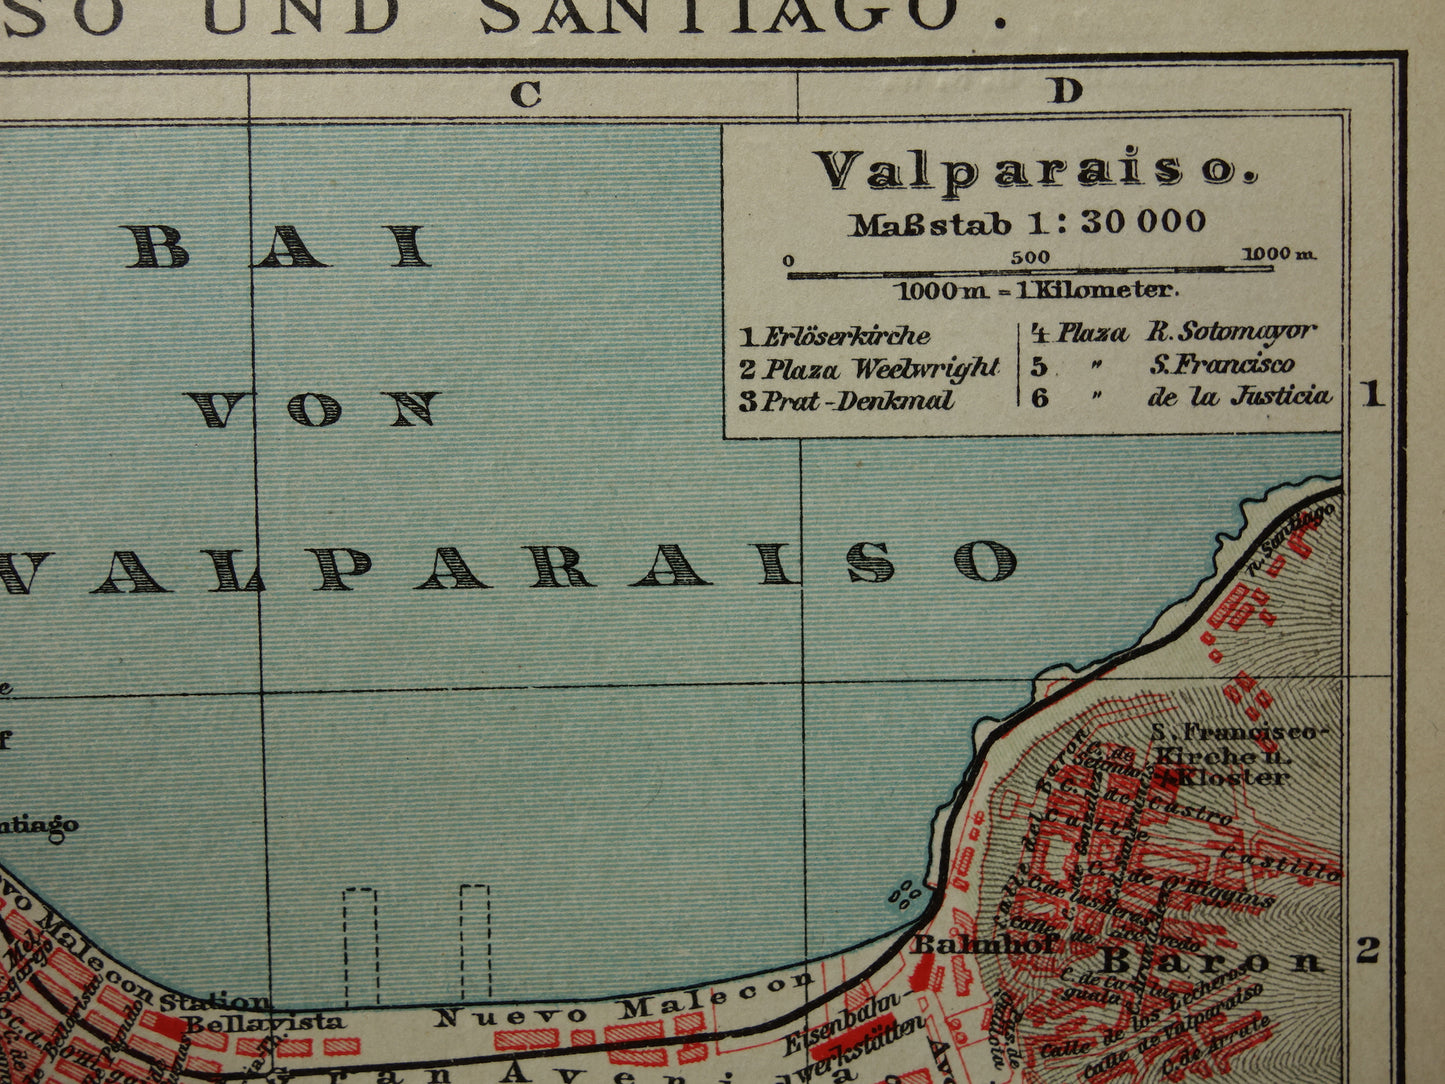 Valparaiso en Santiago Brazilië oude kaart plattegrond uit het jaar 1908 originele antieke kaarten